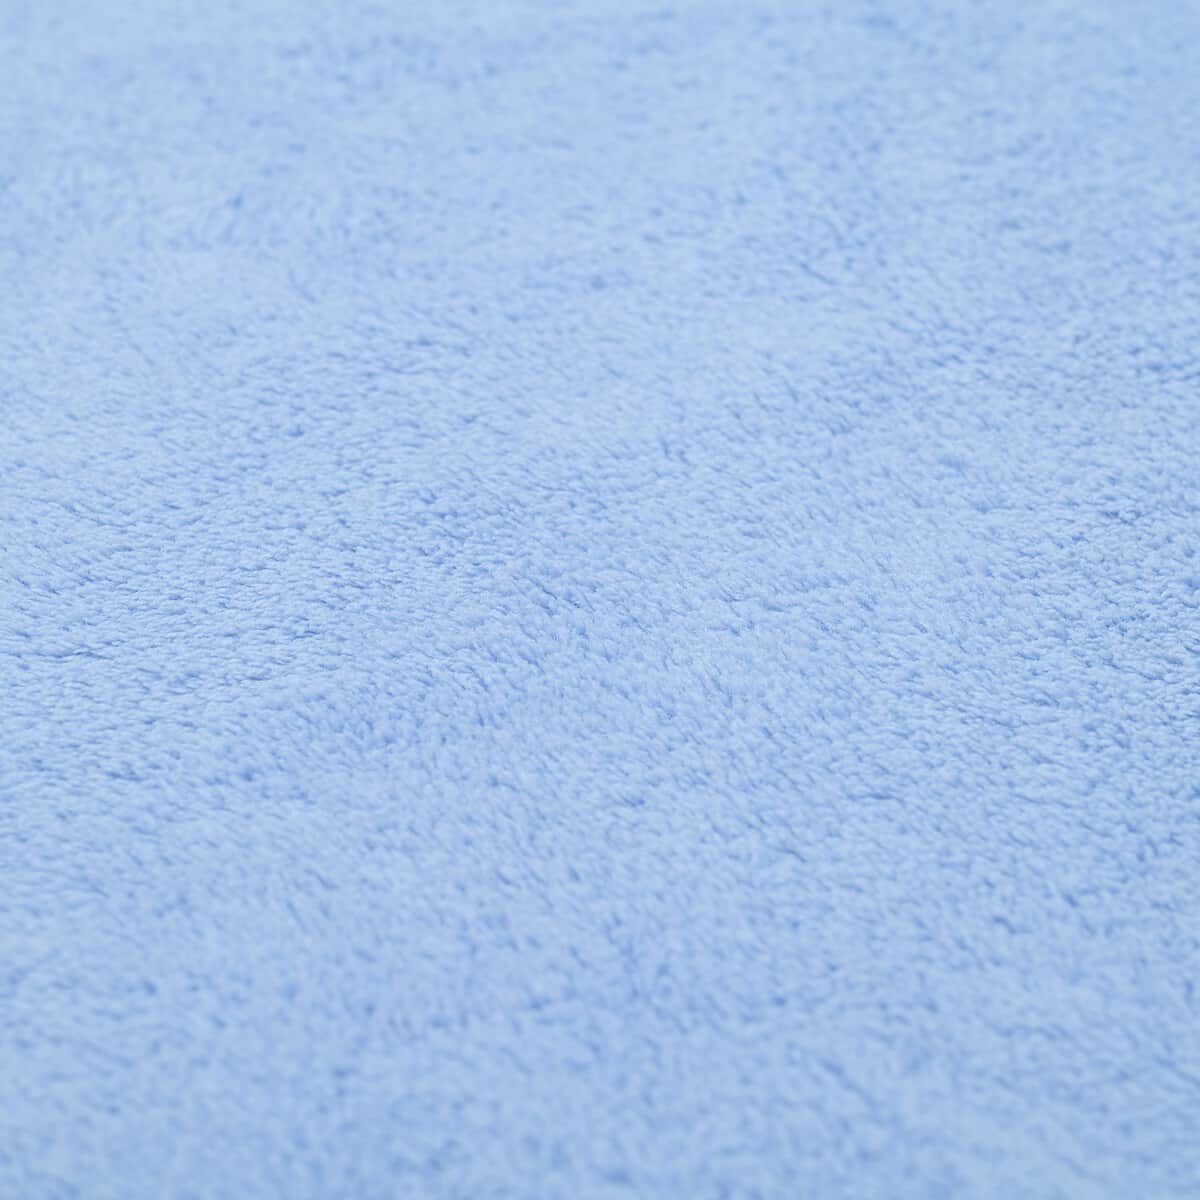 HOMESMART Set of 2 Blue Solid Color Microfiber Bath Towel image number 4